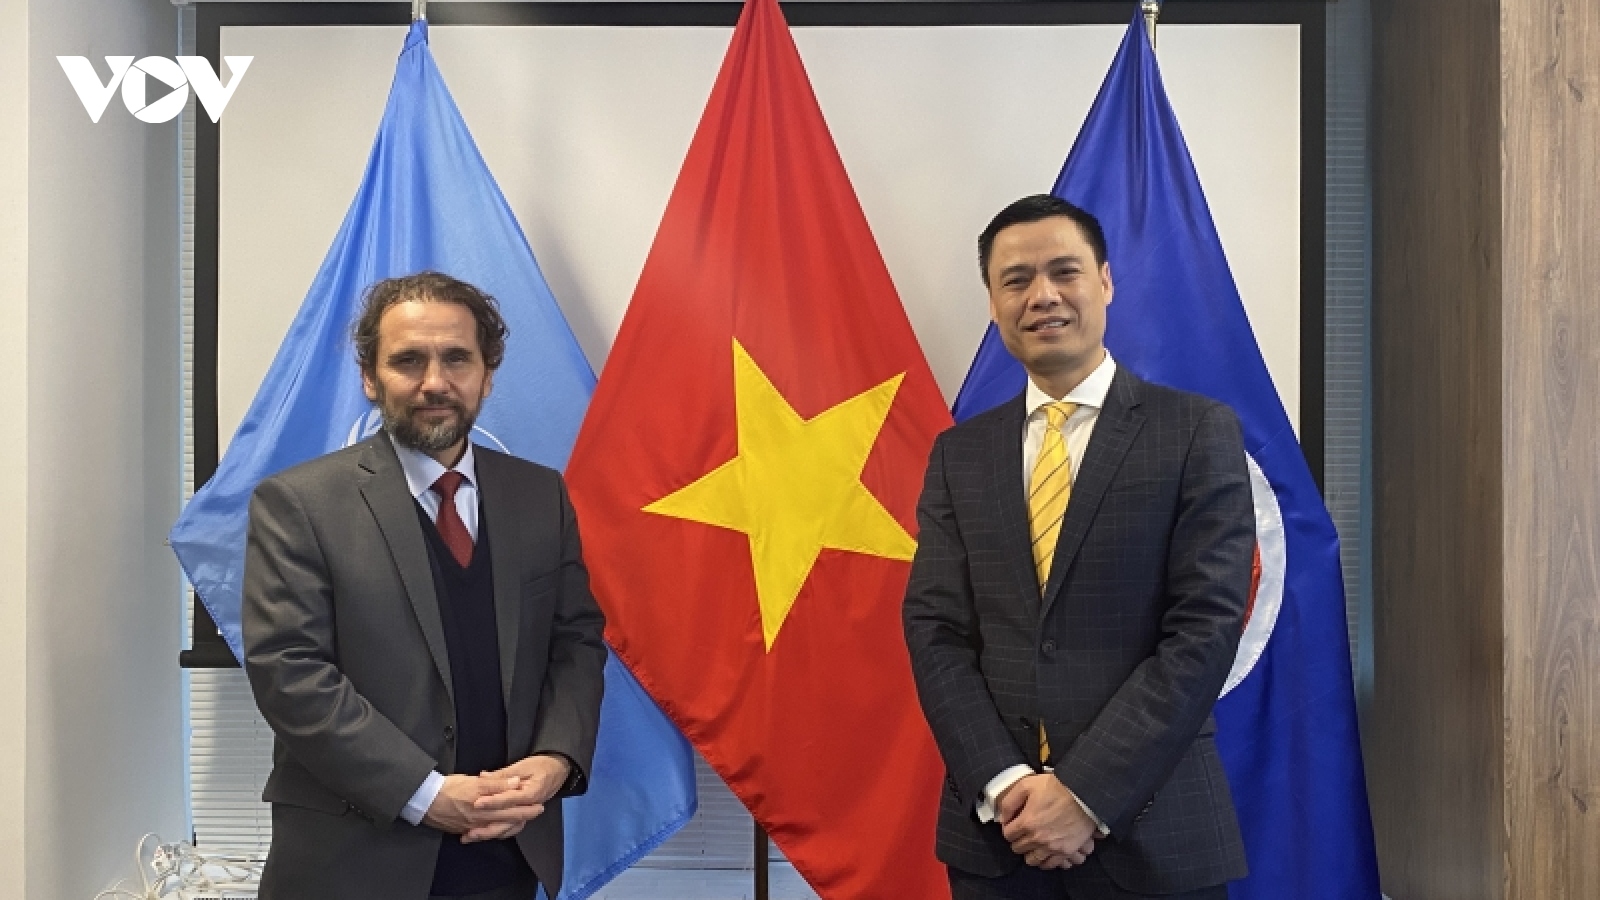 Đại sứ Việt Nam tại LHQ tiếp Đặc phái viên Công ước Quốc tế về cấm mìn sát thương